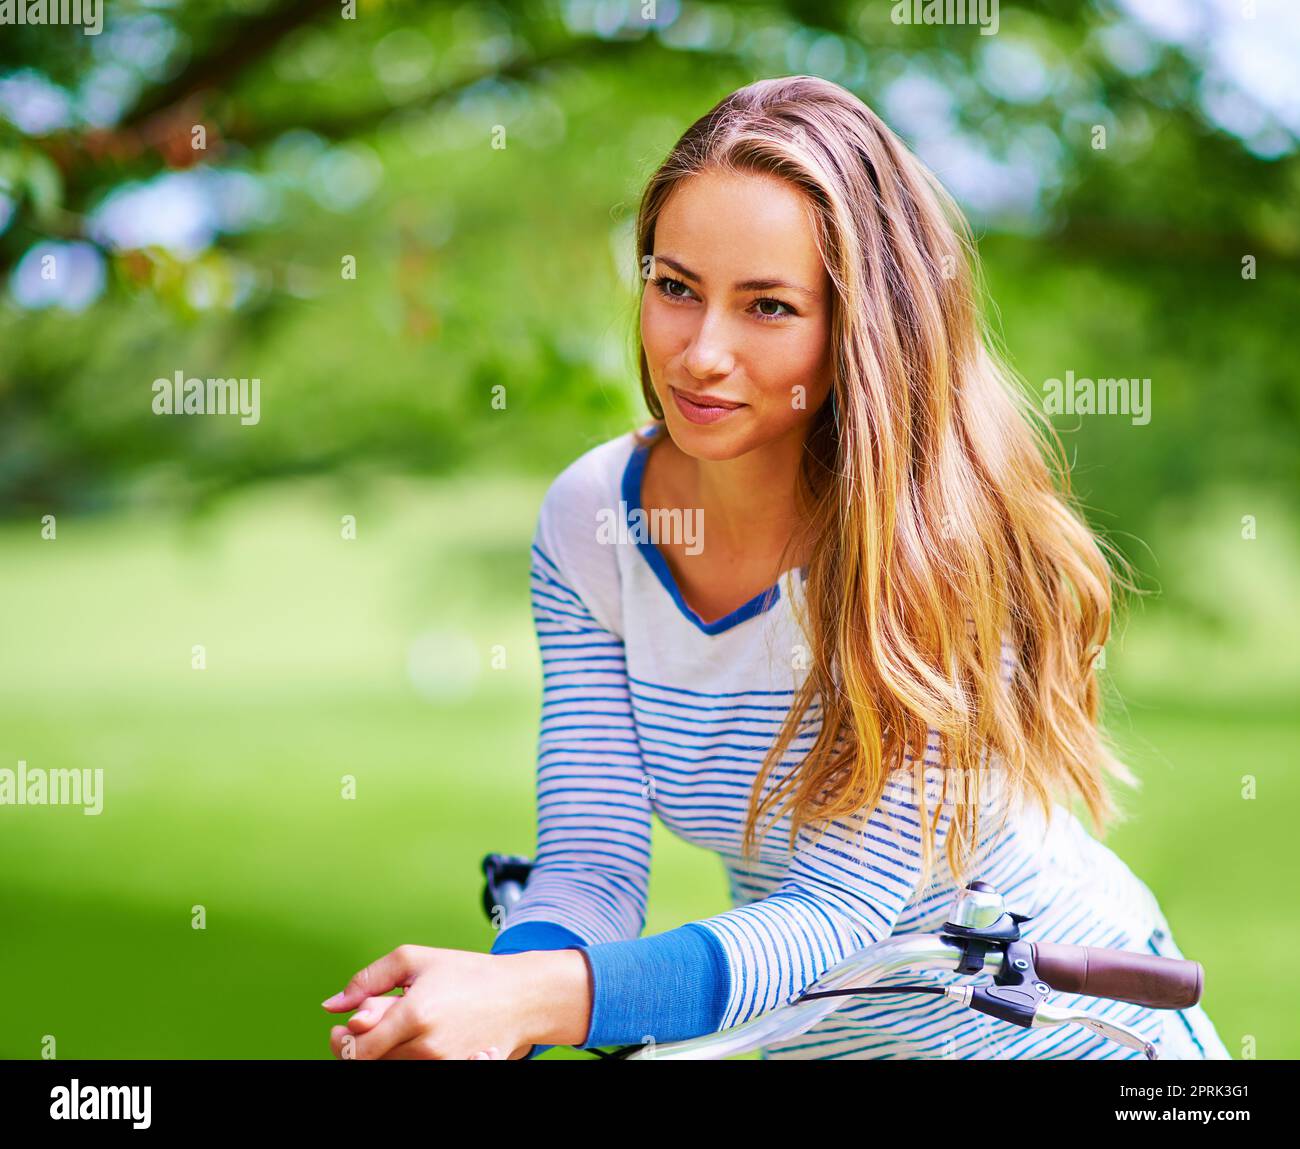 Apprezzare la bellezza della natura, una giovane donna in bicicletta nel parco. Foto Stock